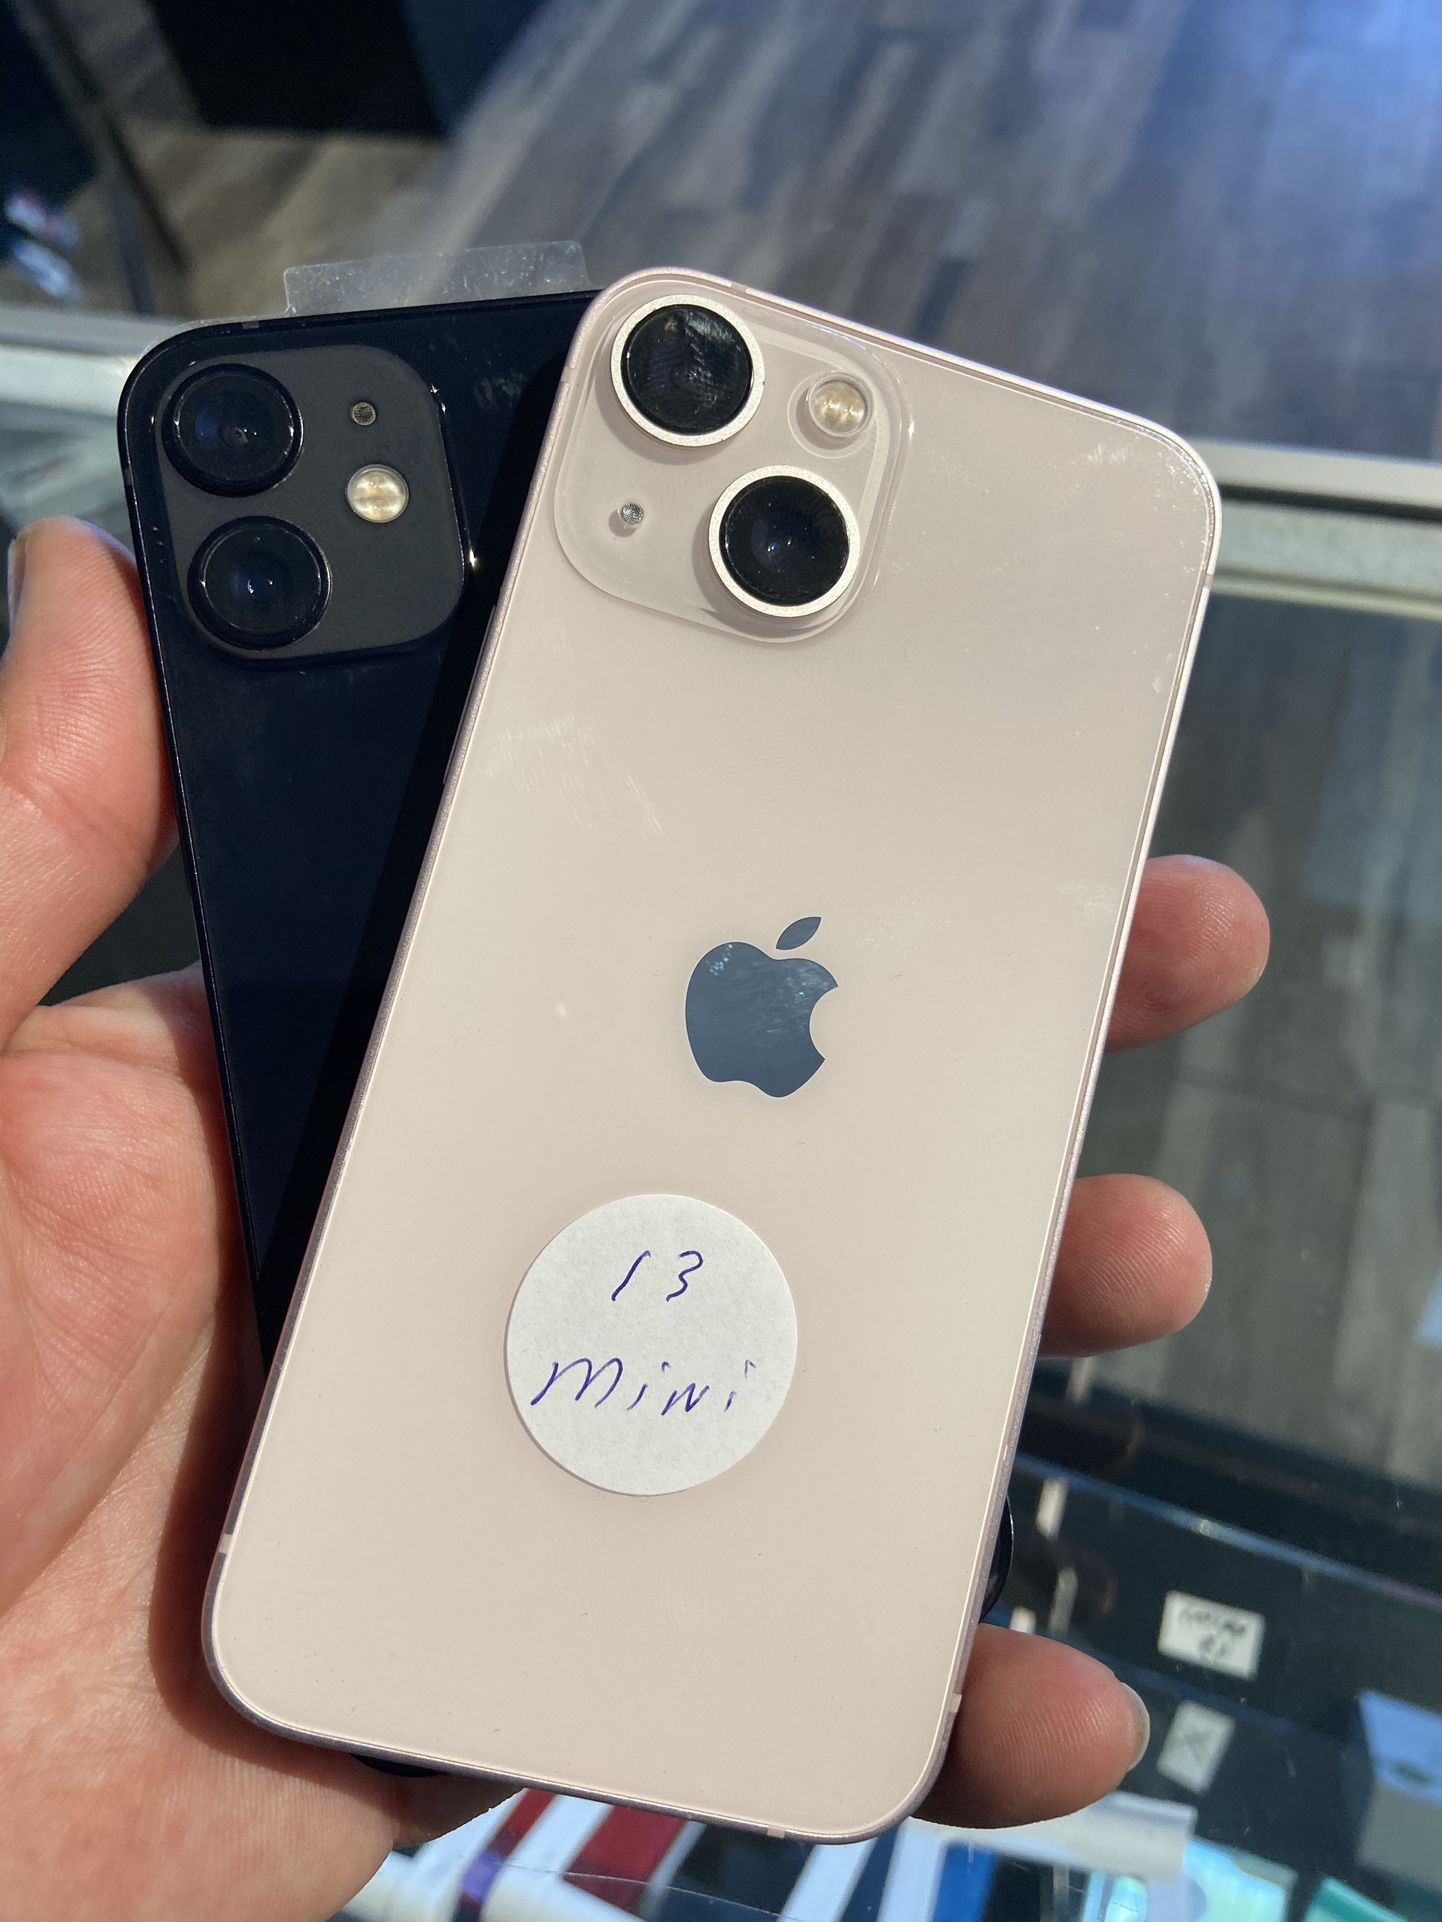 iPhone 12 Mini & 13 Mini Unlocked $50 Down W Approval 